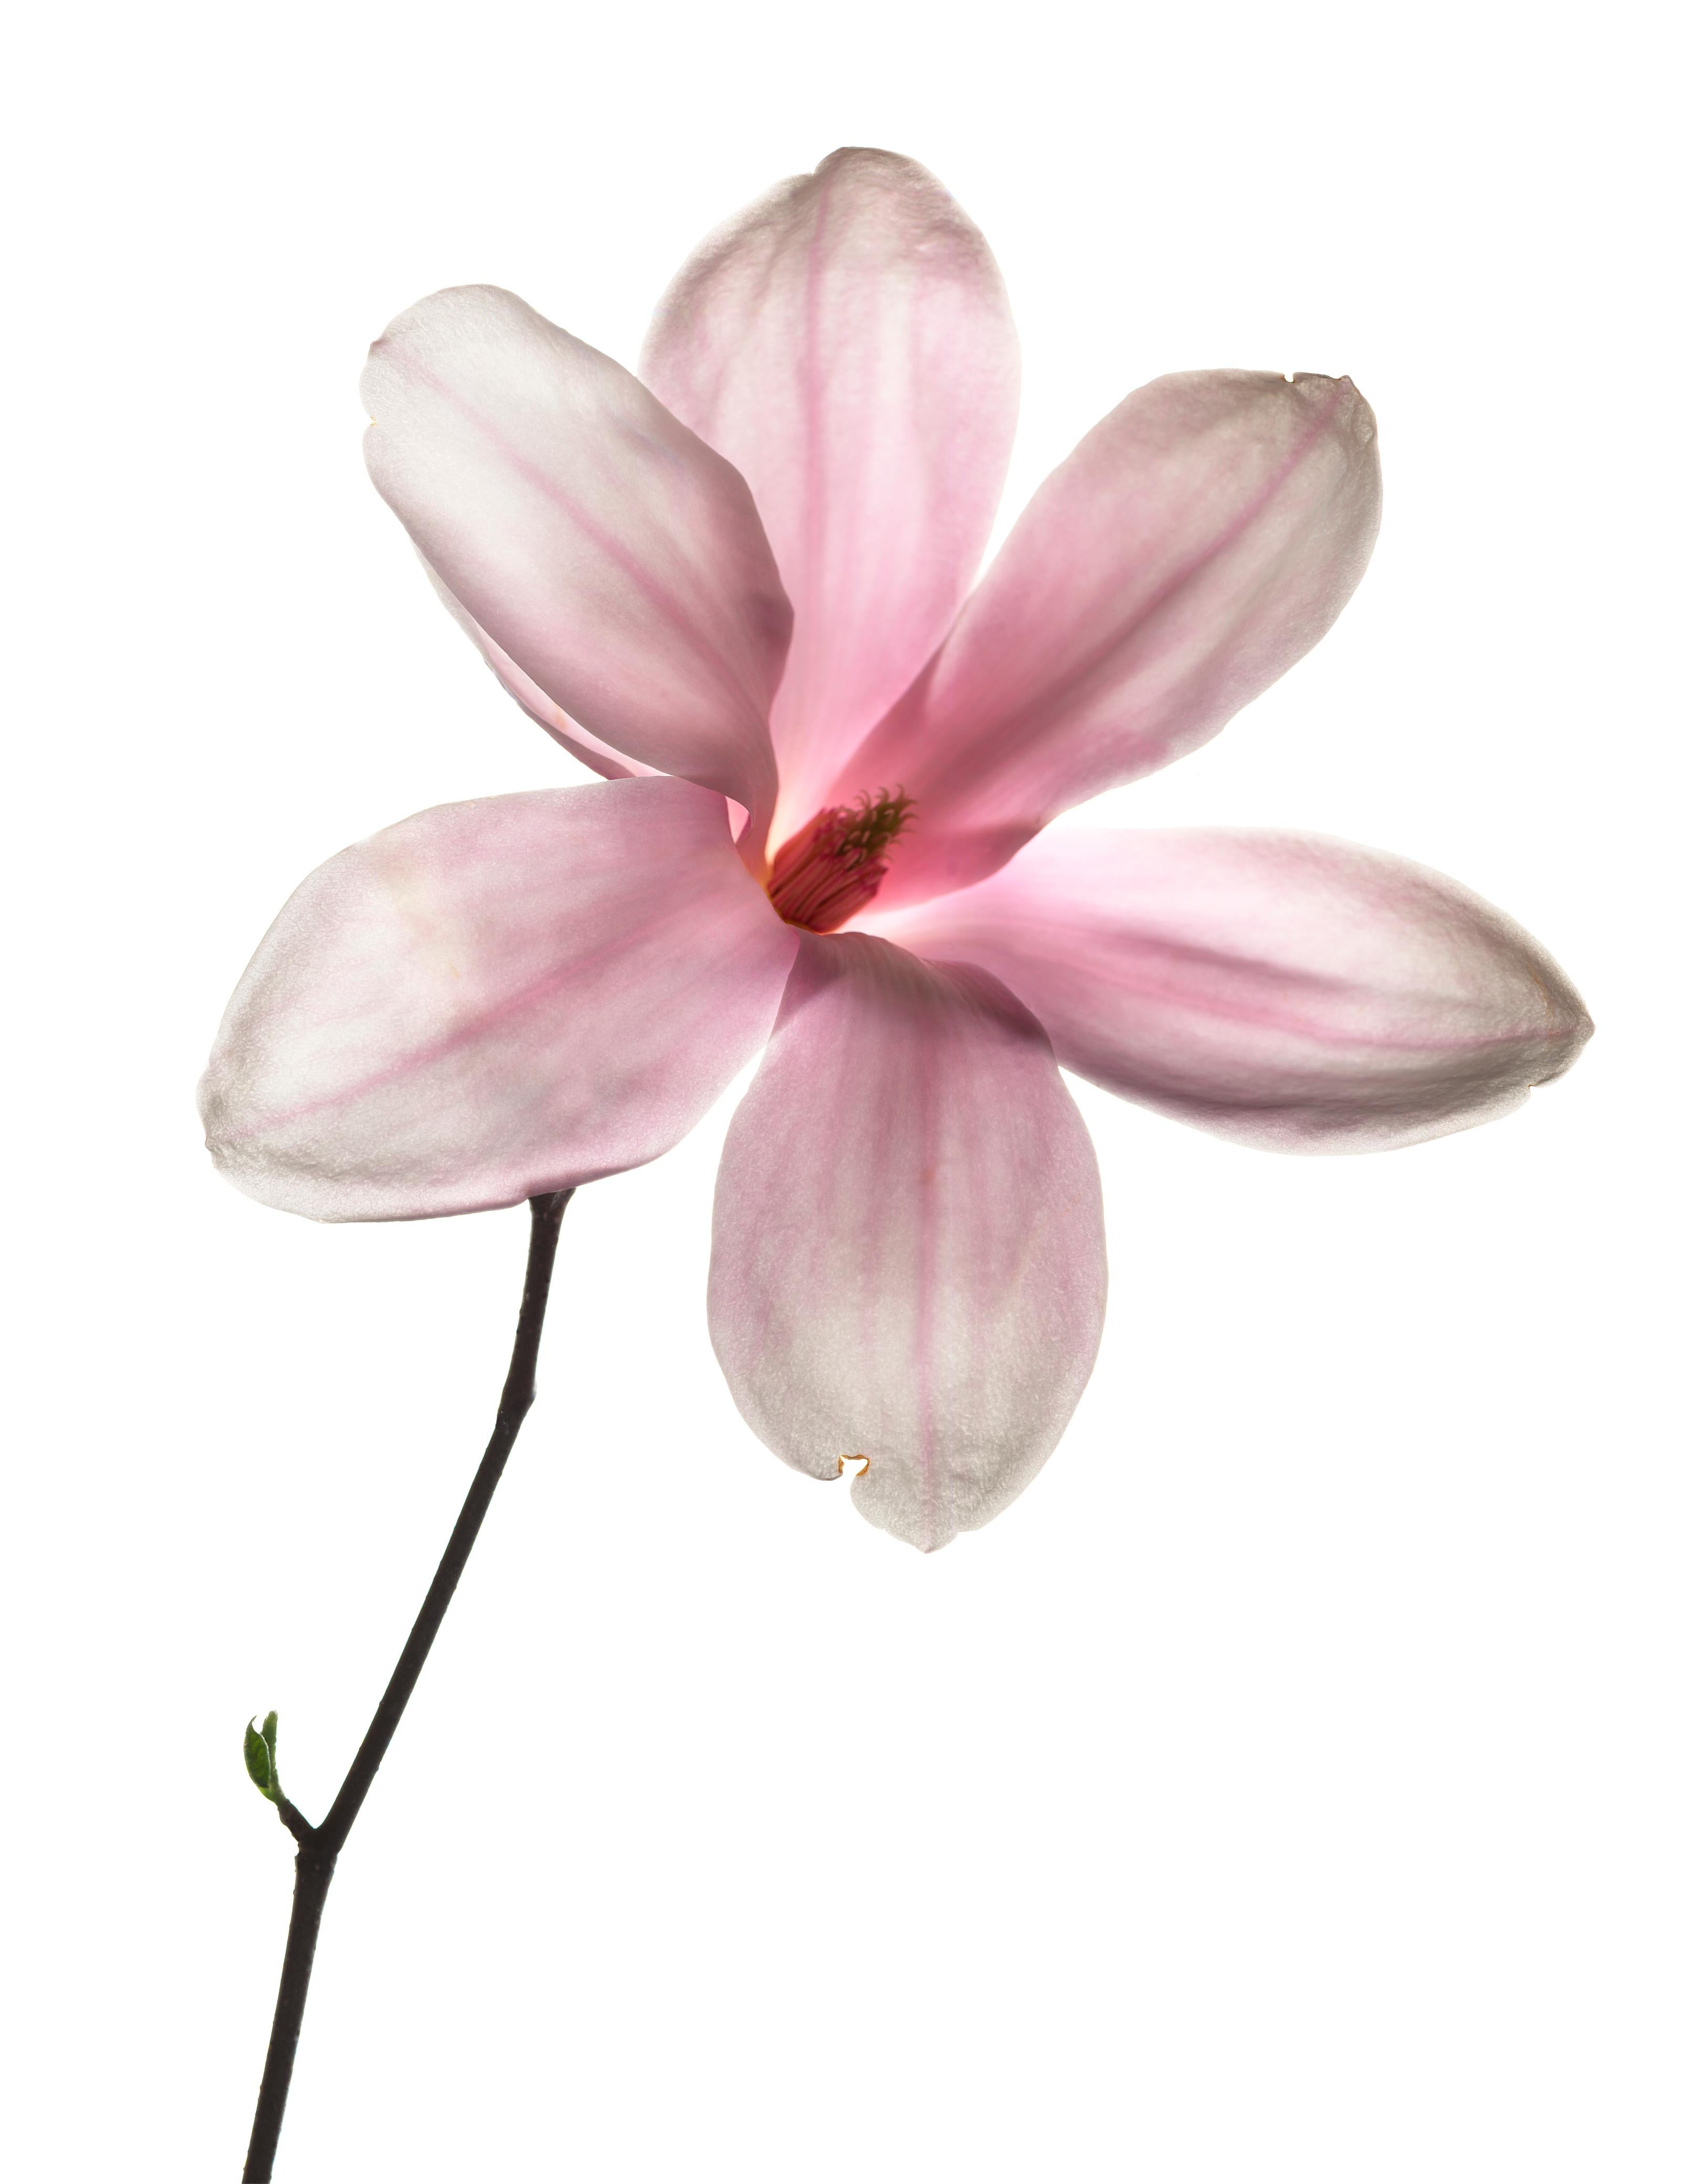 Chad Kleitsch Figurative Photograph - Untitled Flower # 113 (20" x 24")